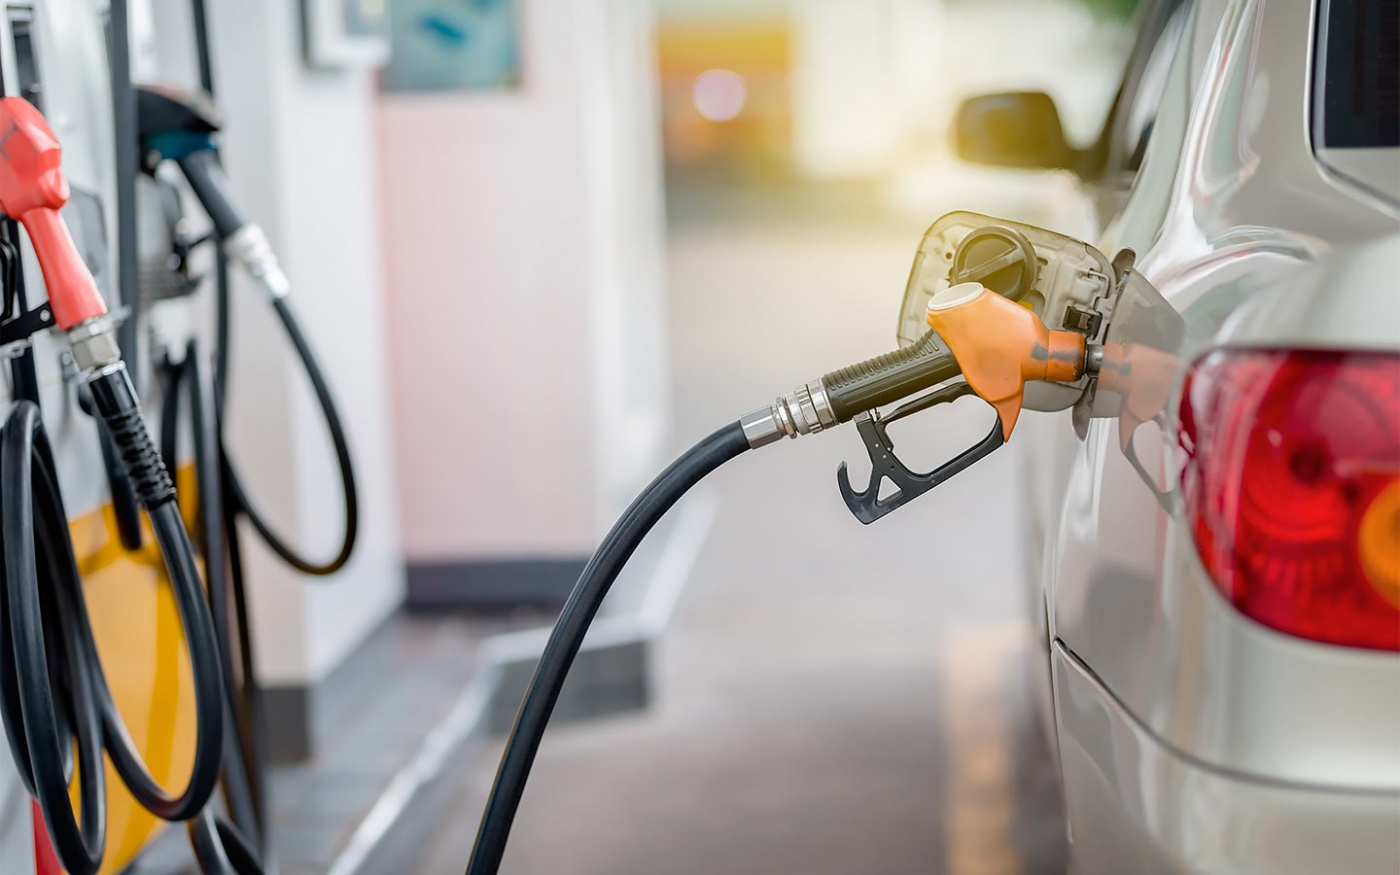 Цены на АЗС:: сколько стоят бензин, дизель и автогаз